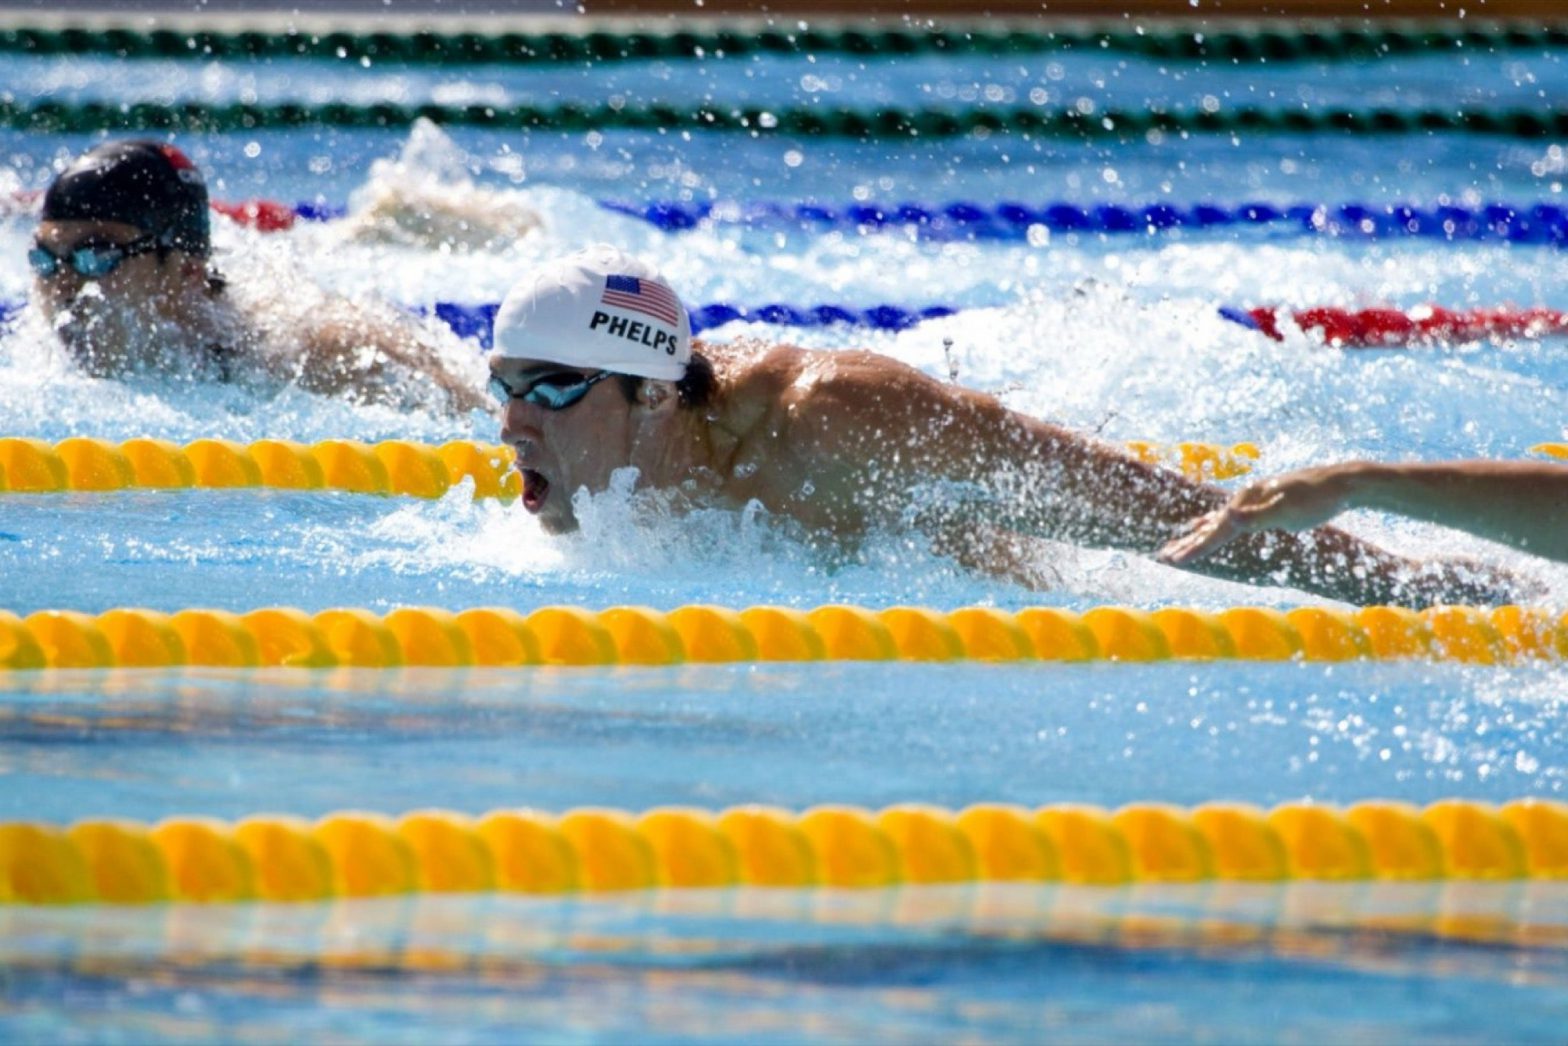 Personas exitosas como Michael Phelps tienen prácticas diarias.